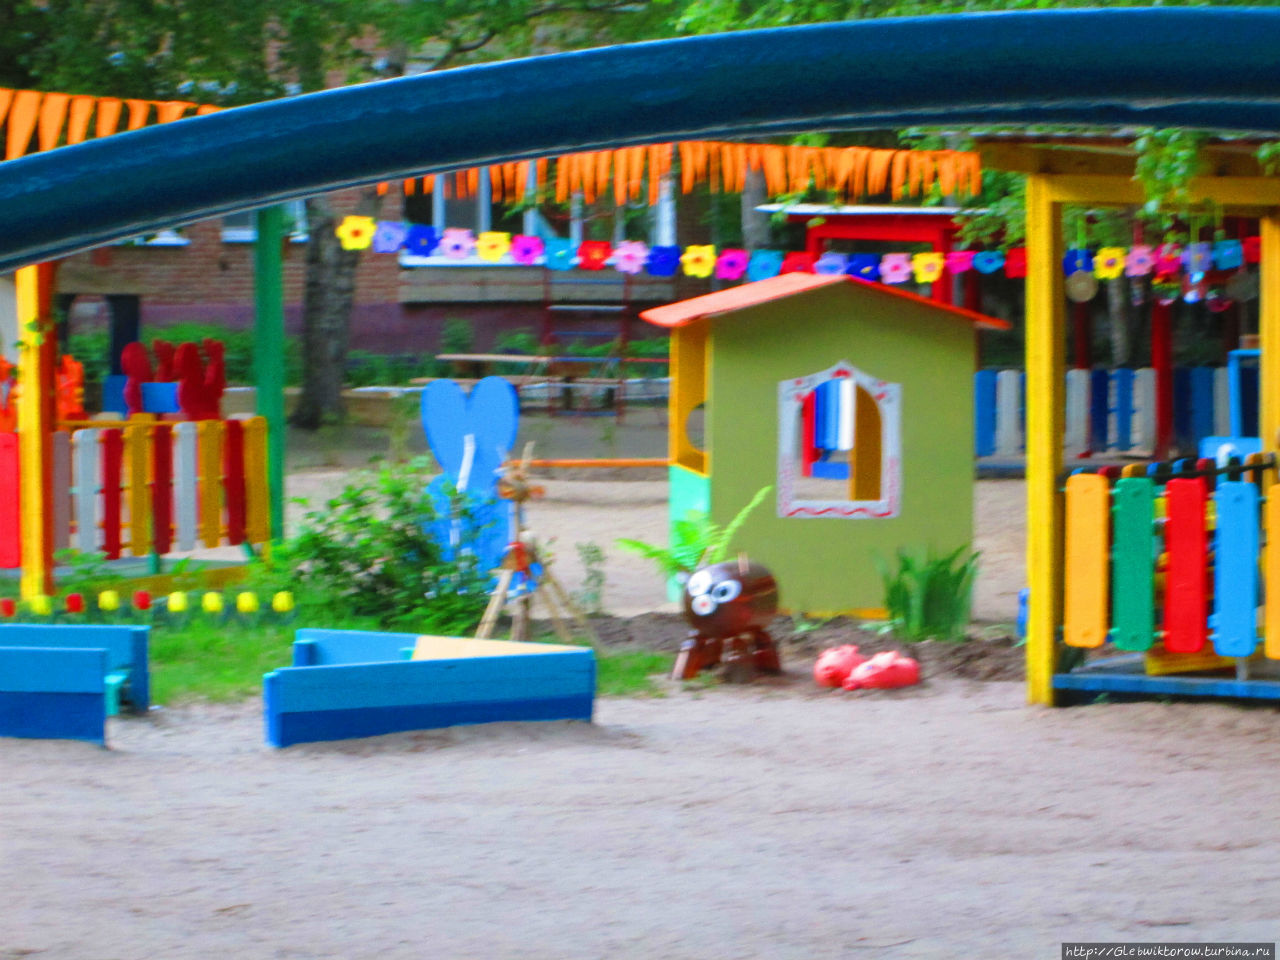 Нестандартная достопримечательность — детский сад Тюмень, Россия